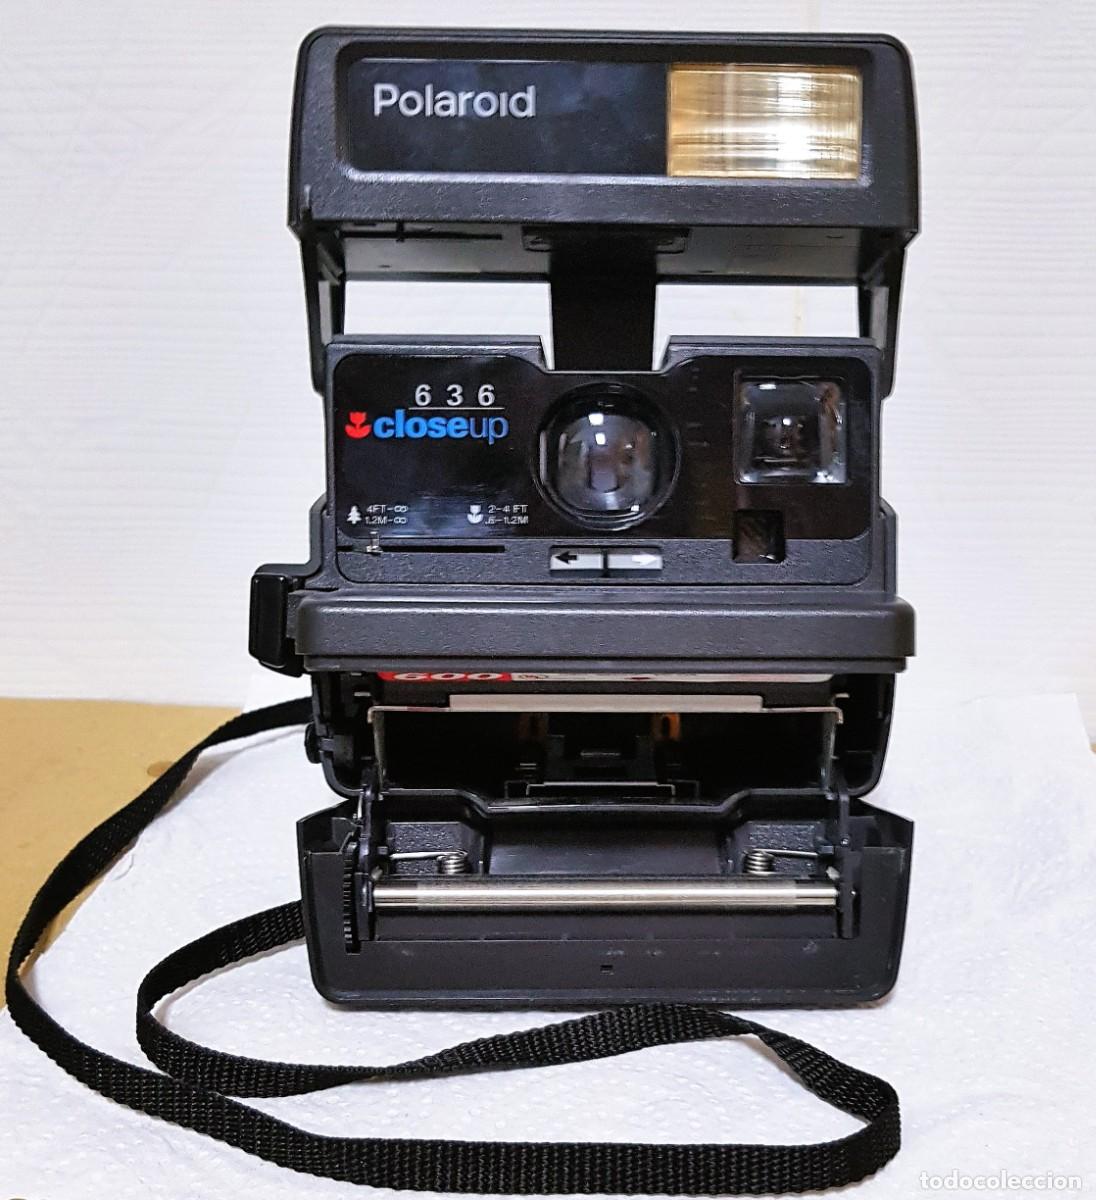 販サイト Polaroid ポラロイド 636 closeup ４台セット | www.ouni.org